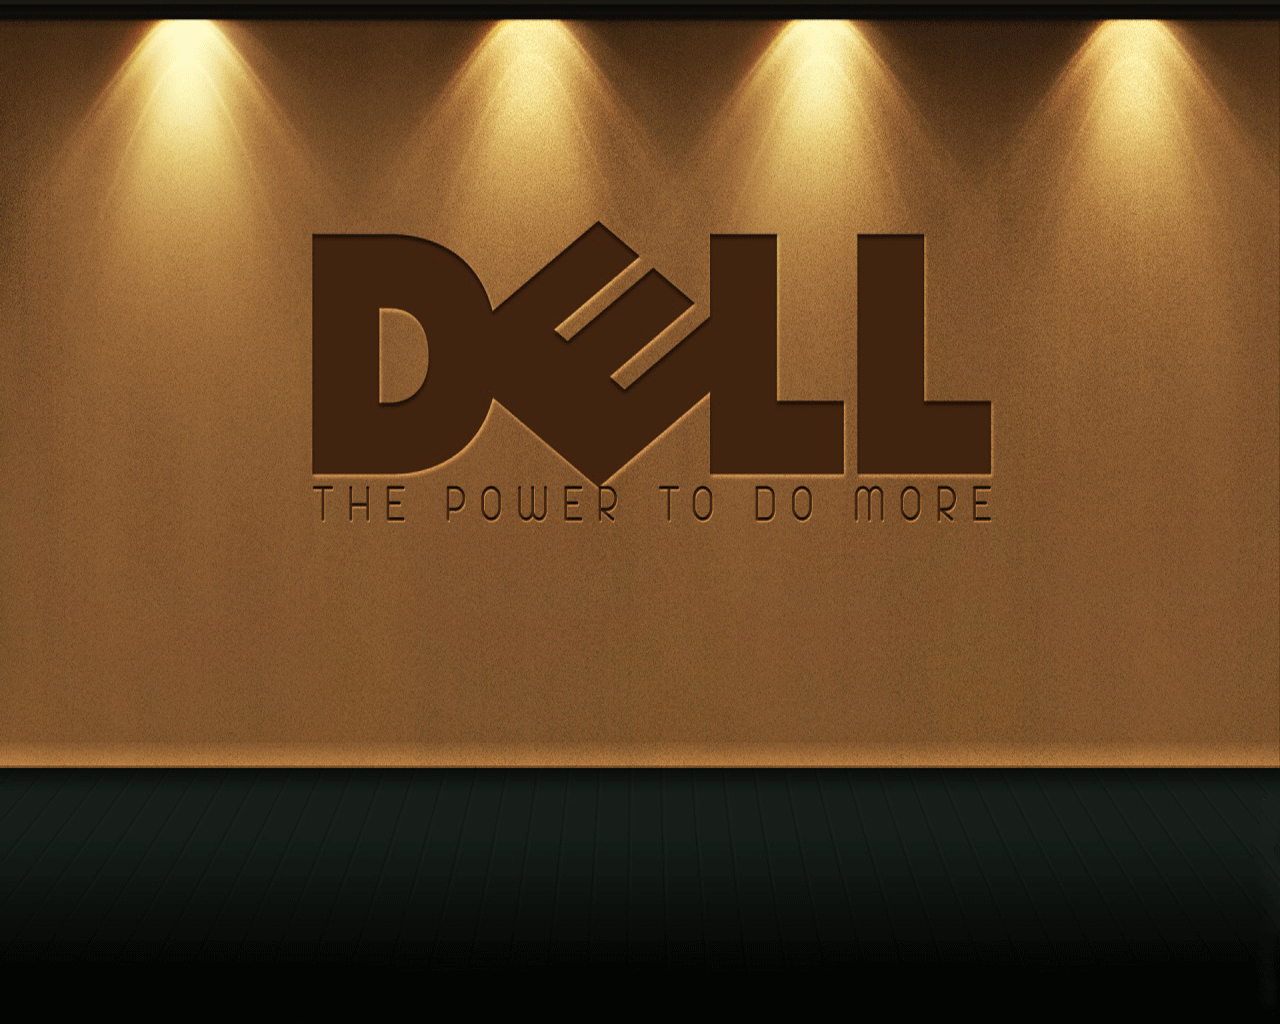 Dell wallpaper: Với những bức ảnh nền Dell wallpaper đầy hoa văn, trừu tượng hay đơn giản nhưng tinh tế, chắc chắn bạn sẽ tìm được bức ảnh ưng ý và phù hợp với phong cách của mình. Hãy xem ngay hình ảnh để thưởng thức những thiết kế độc đáo này.